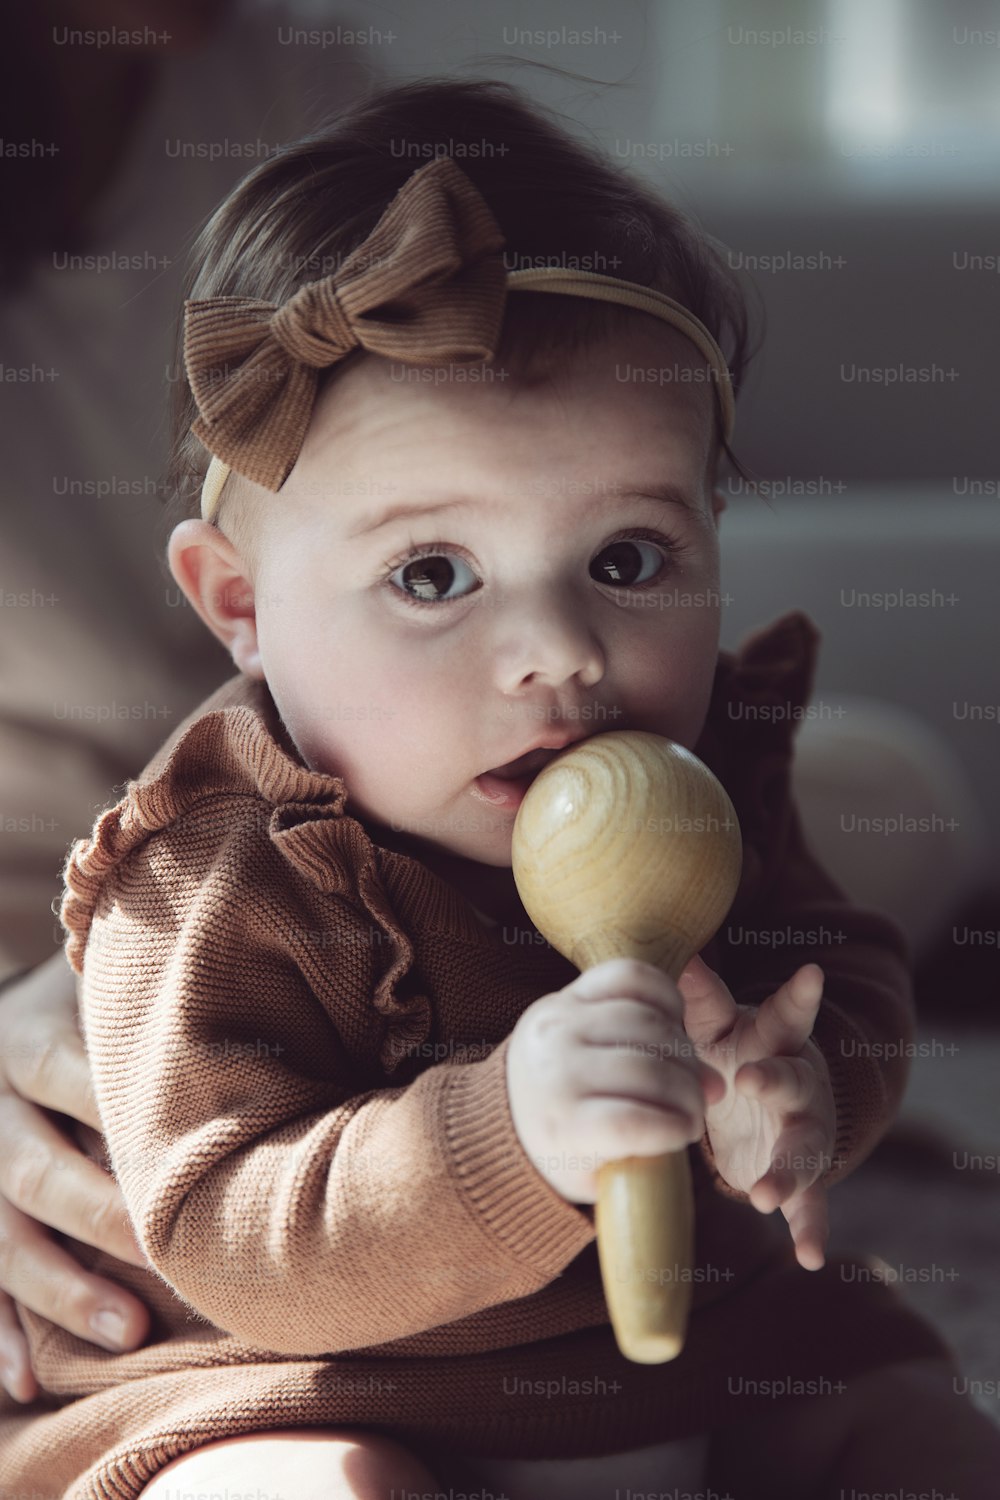 ein kleines Mädchen, das ein Holzspielzeug im Mund hält